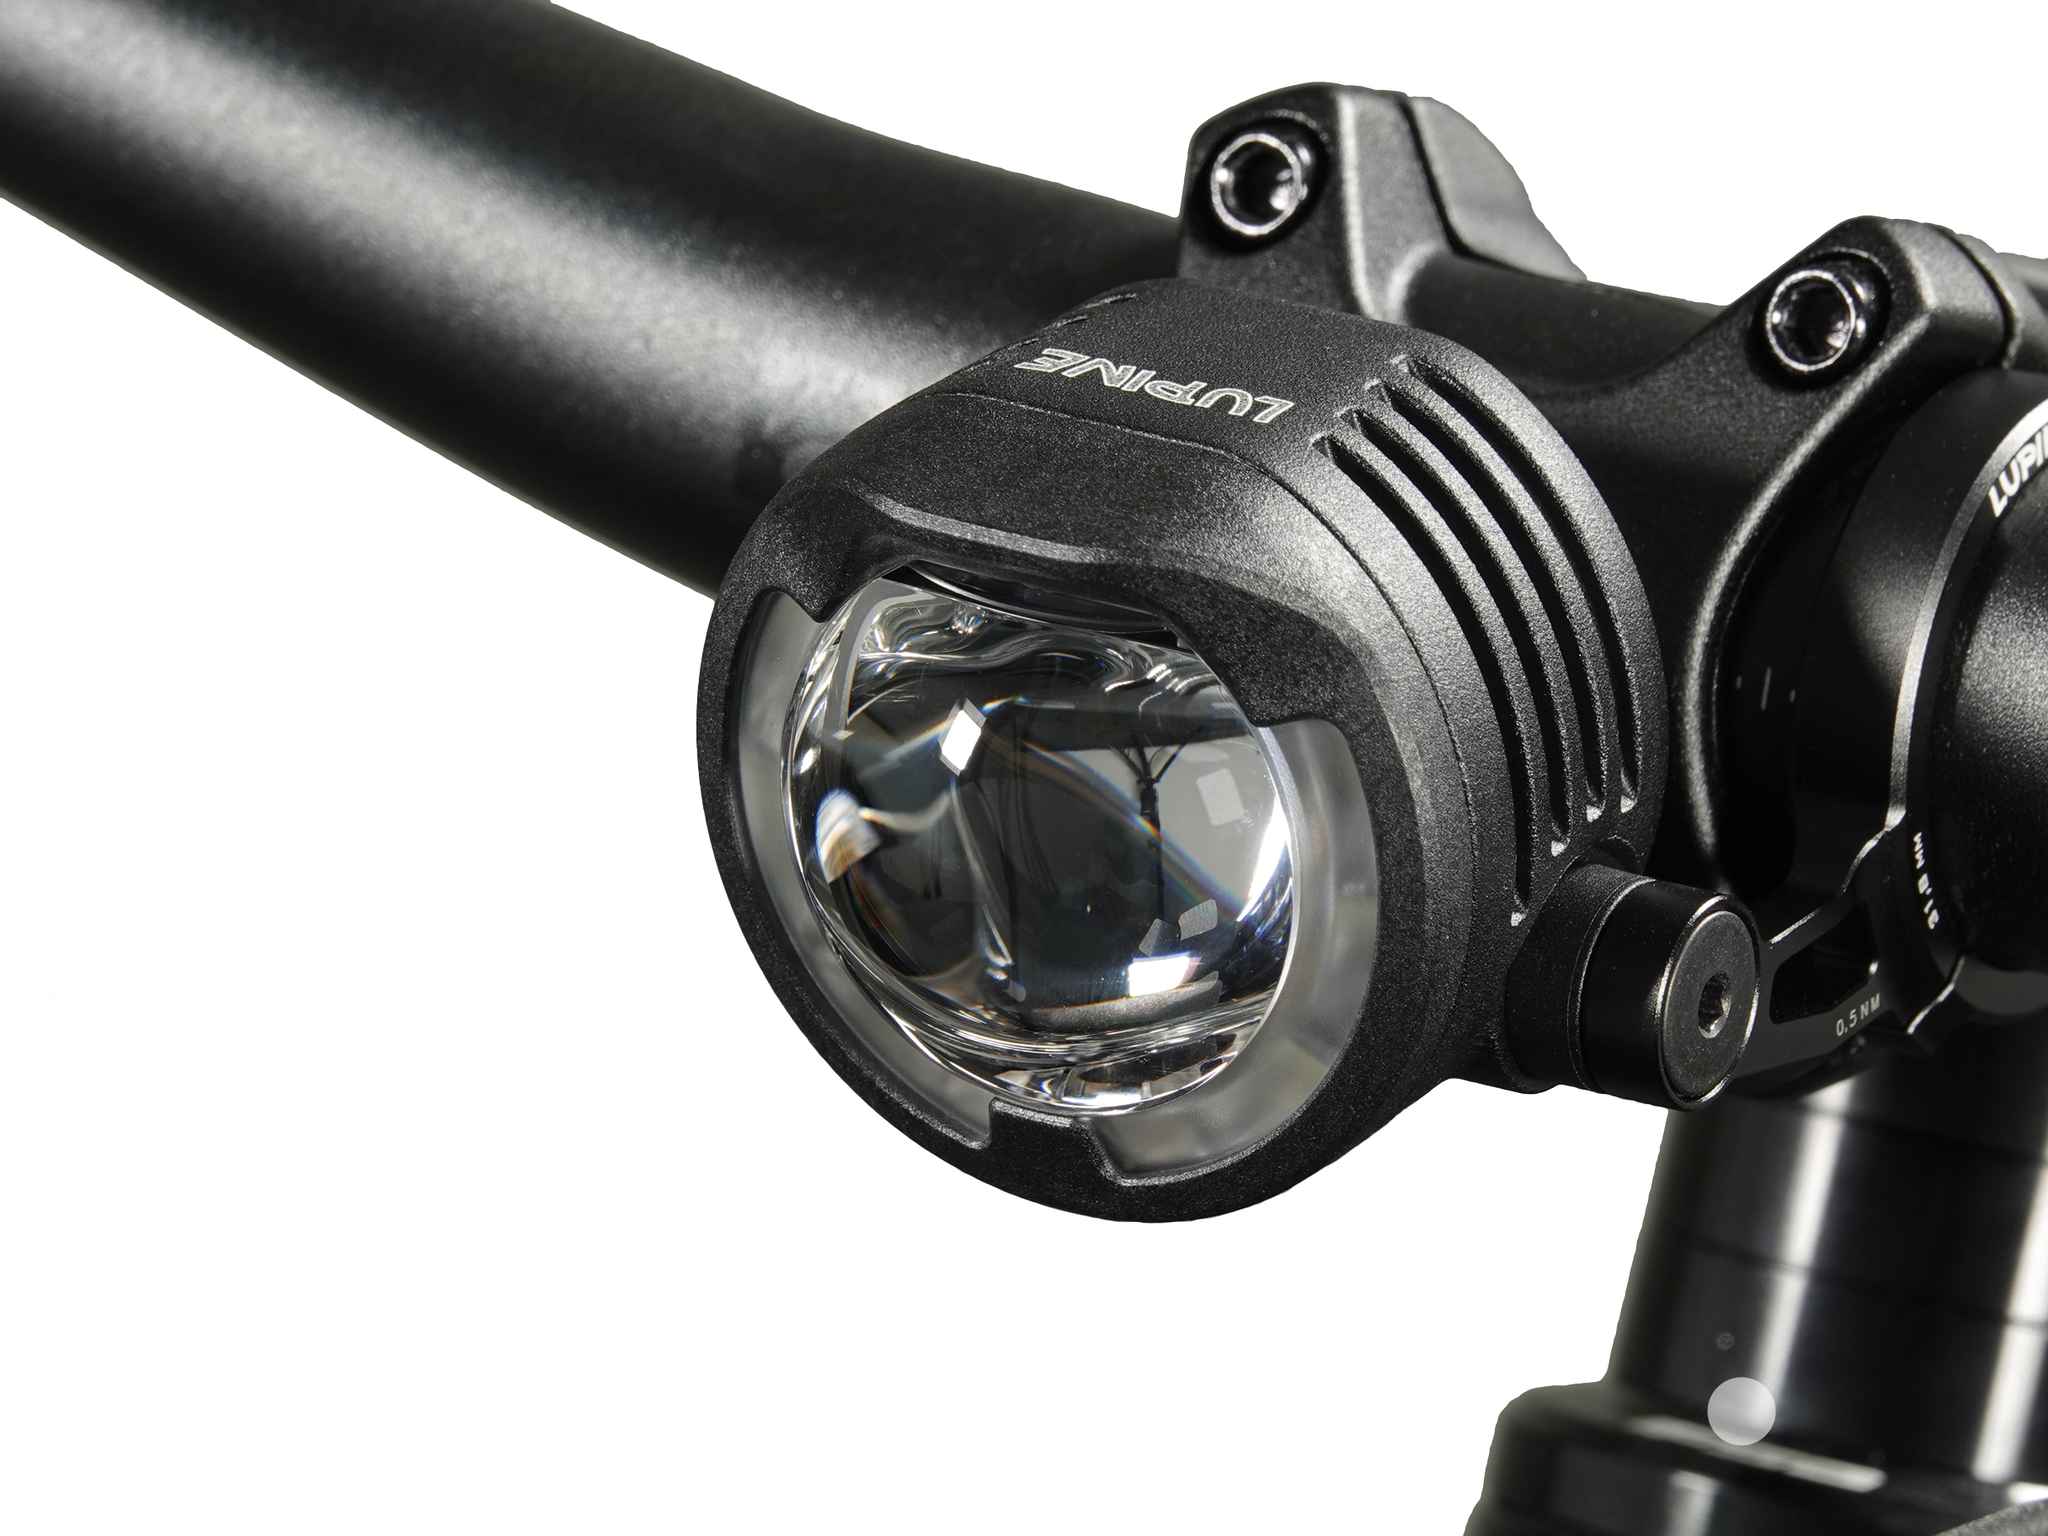 SL F BOSCH Purion/Kiox LED-Scheinwerfer mit Auf-/Abblendlicht, Schwarz - Hauptansicht